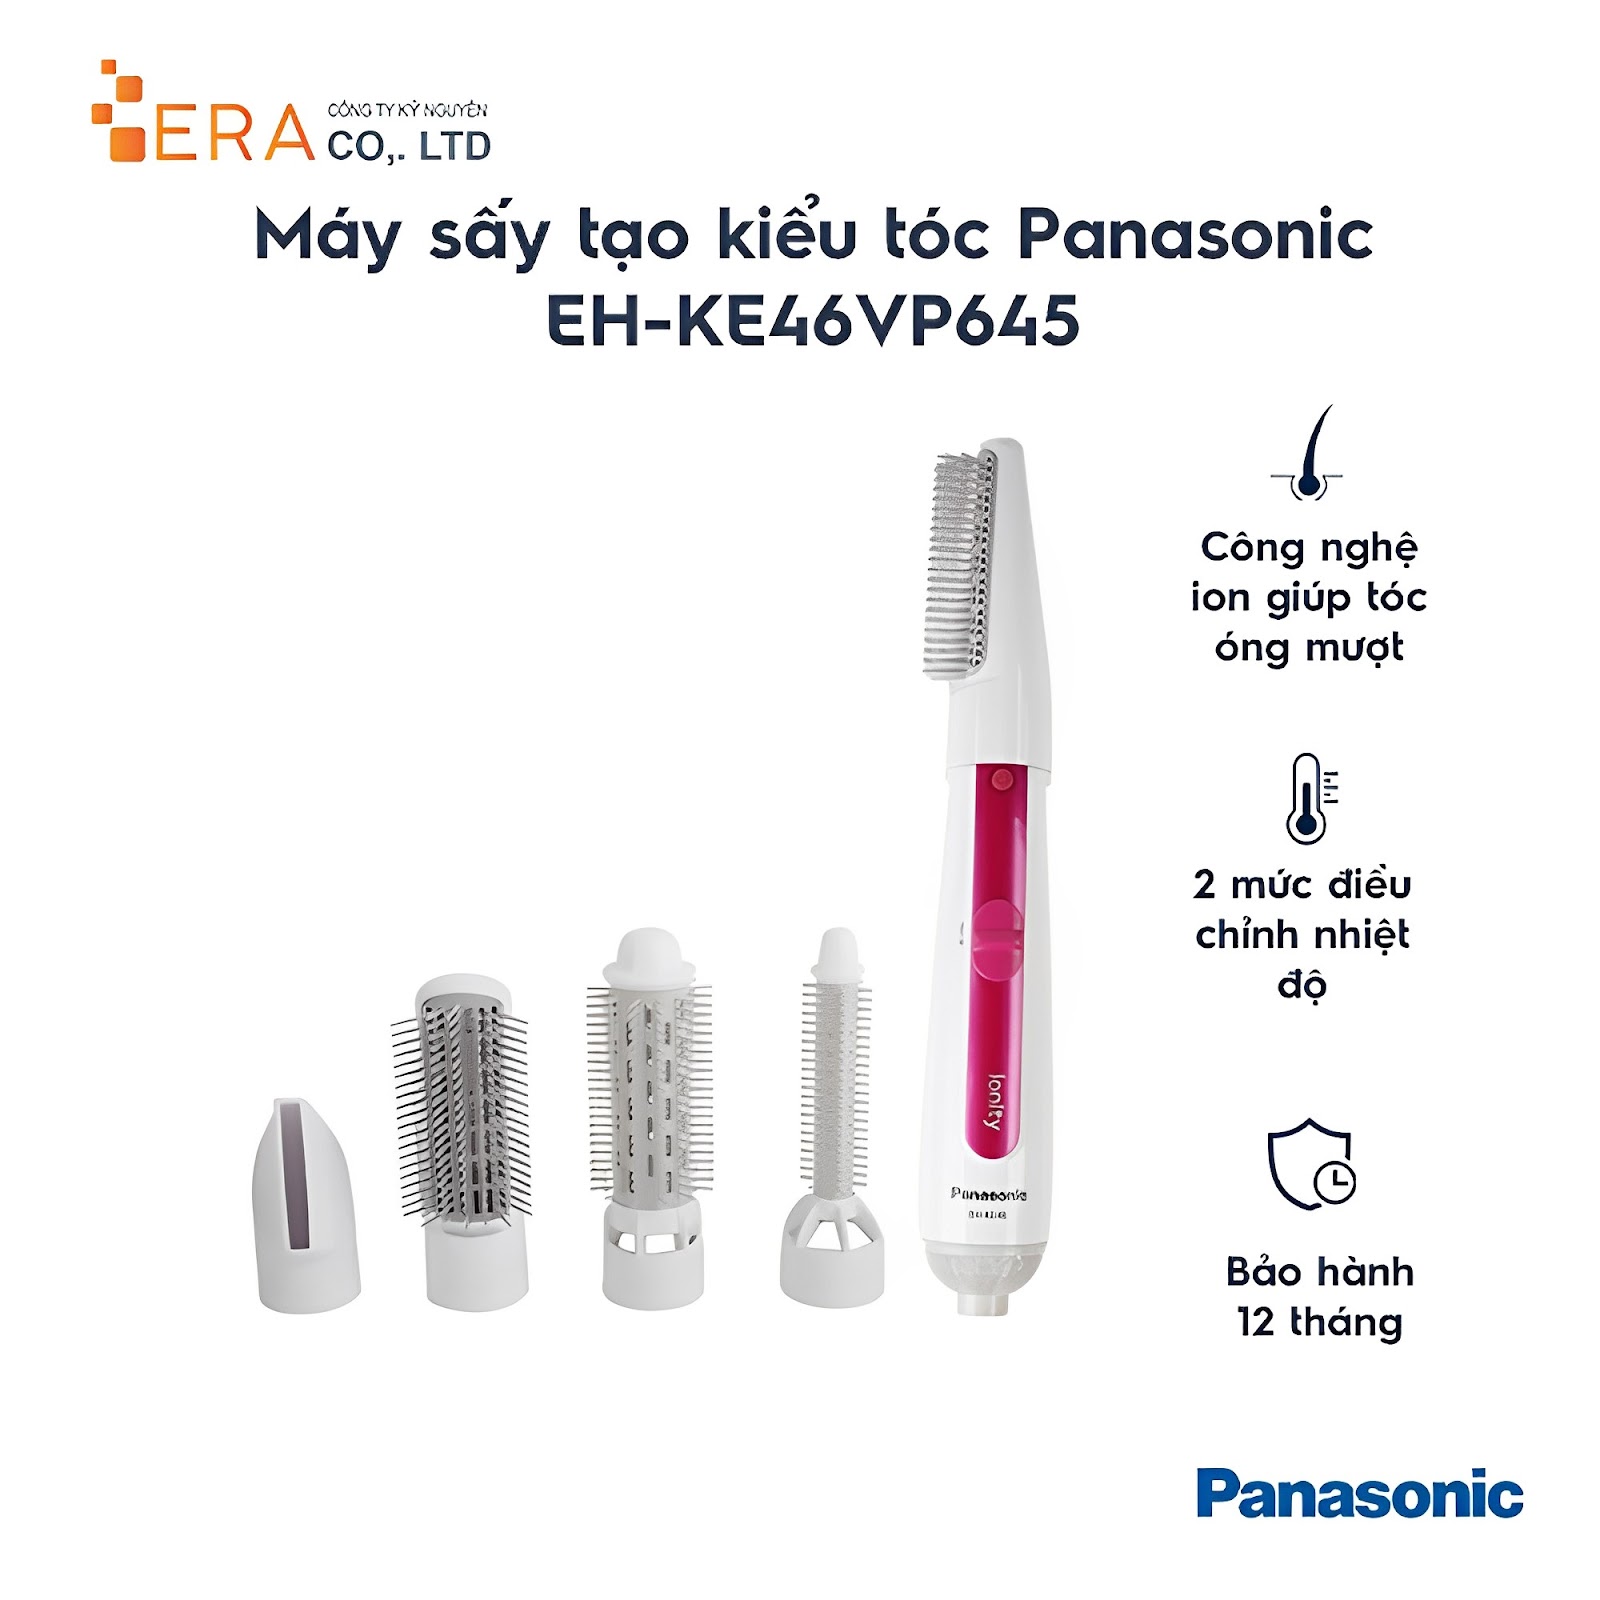 Máy uốn nắn tóc Panasonic PAST-EH-KE46VP645 (Nguồn: Internet)